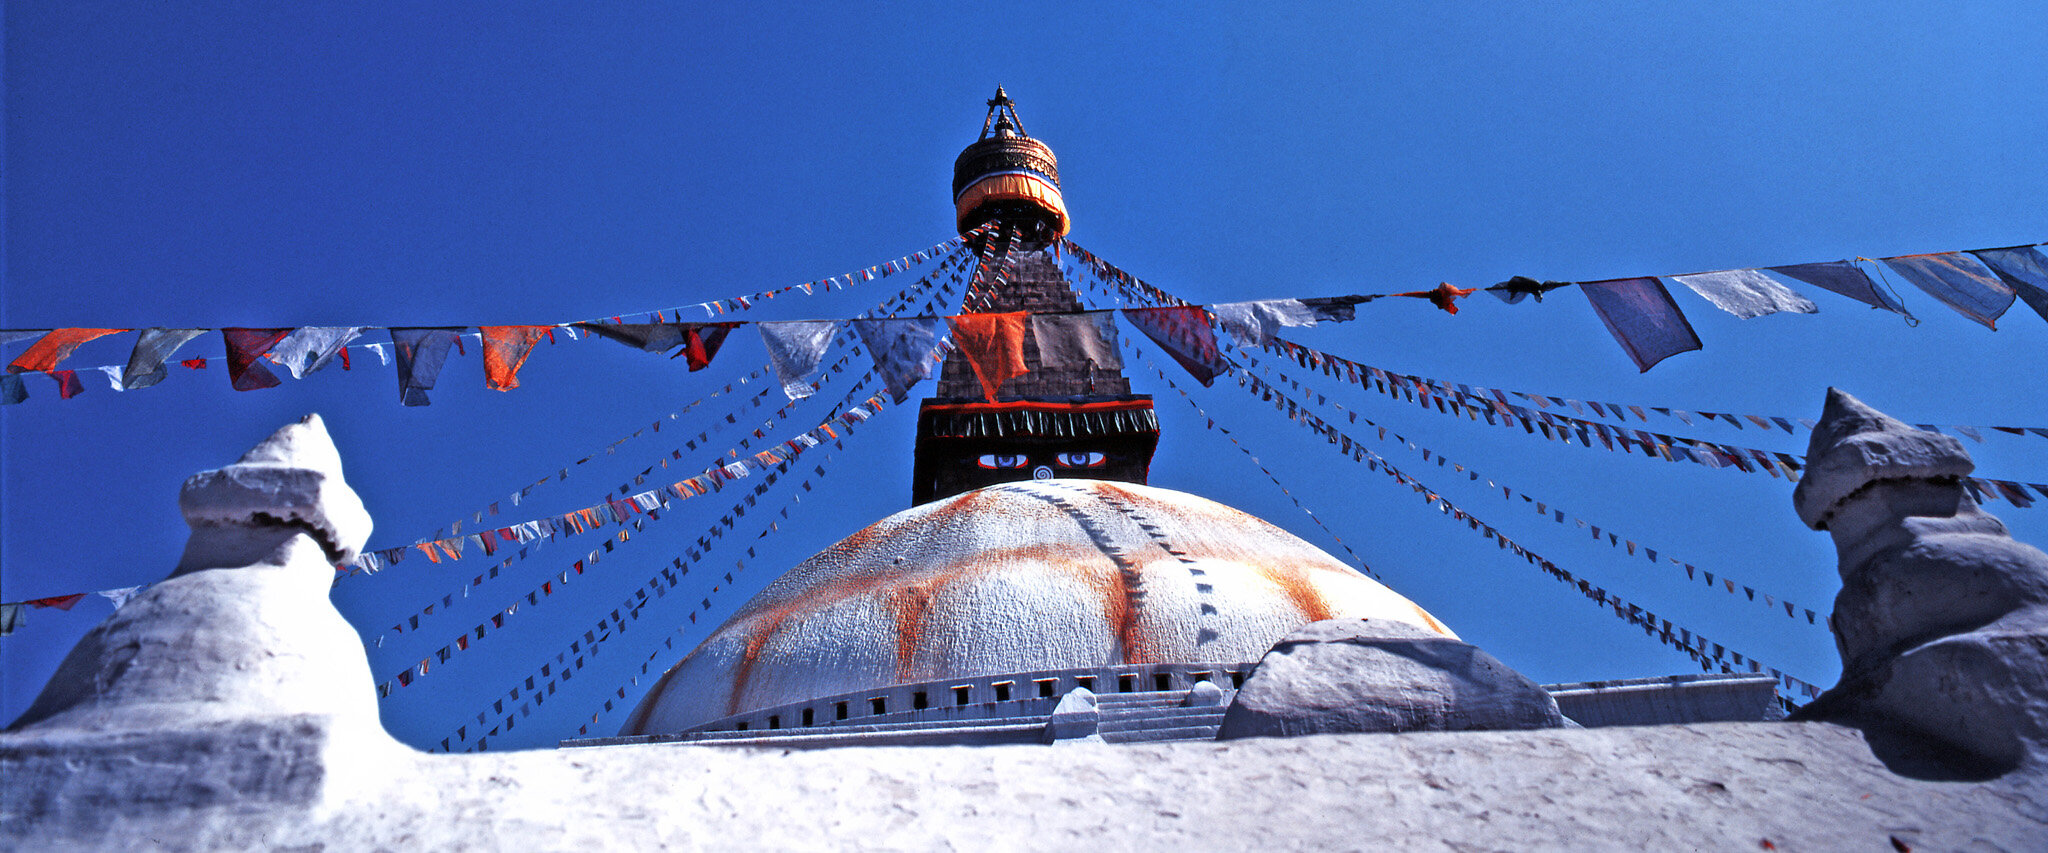 Nepal_Kathmandu_Stupa von Bodnath.jpg